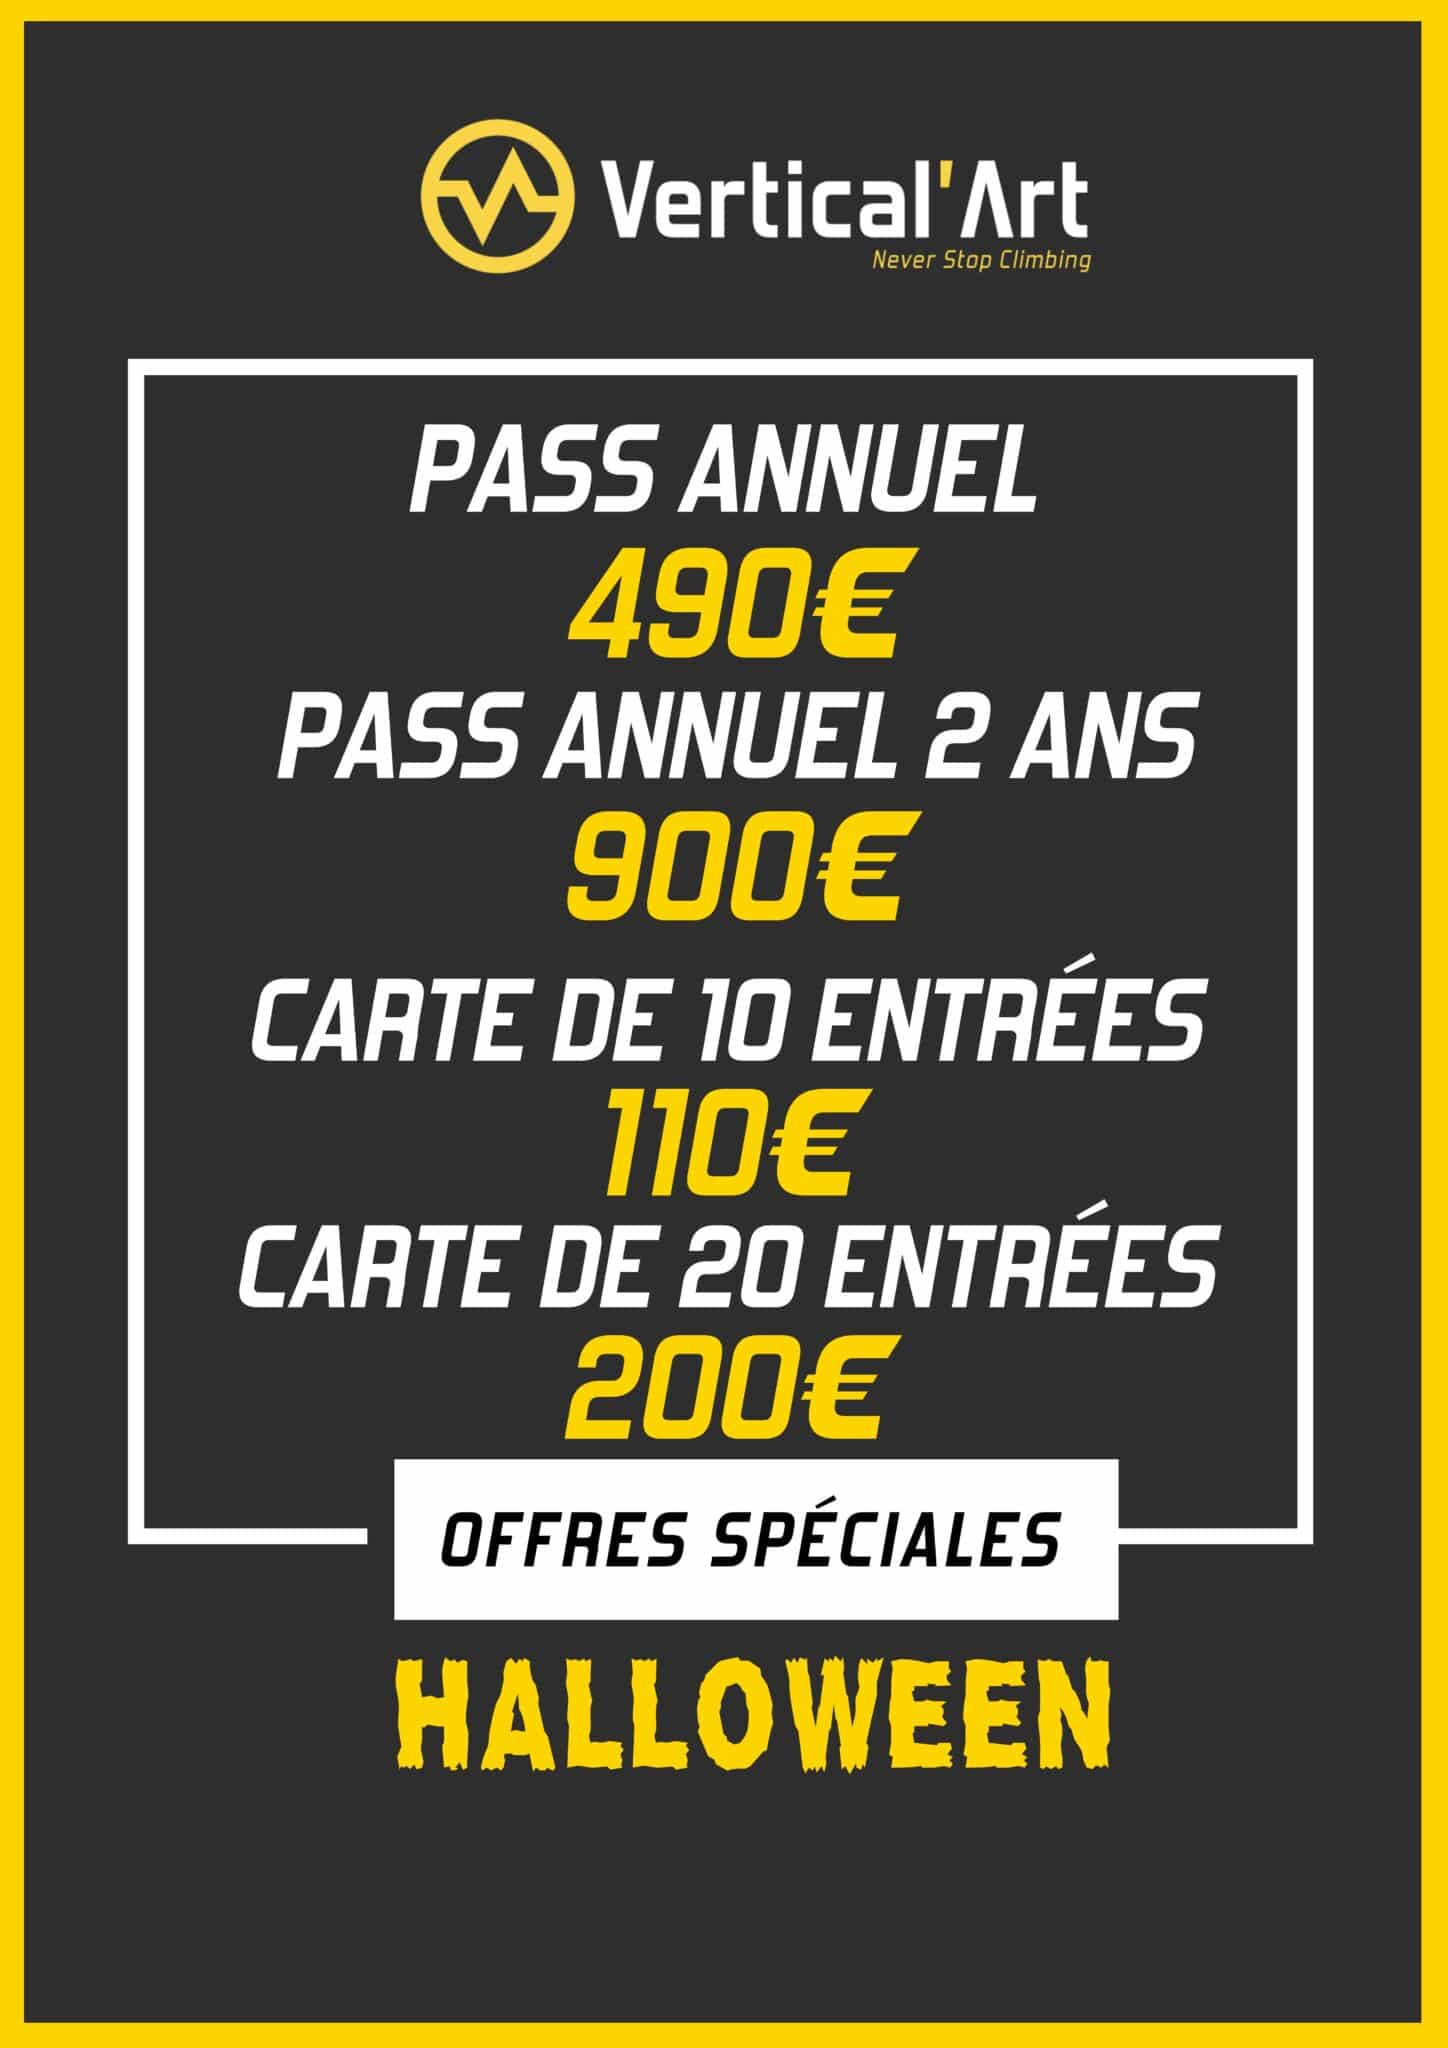 Offres Monstres Halloween à Vertical'Art Lille du 21 au 31 octobre